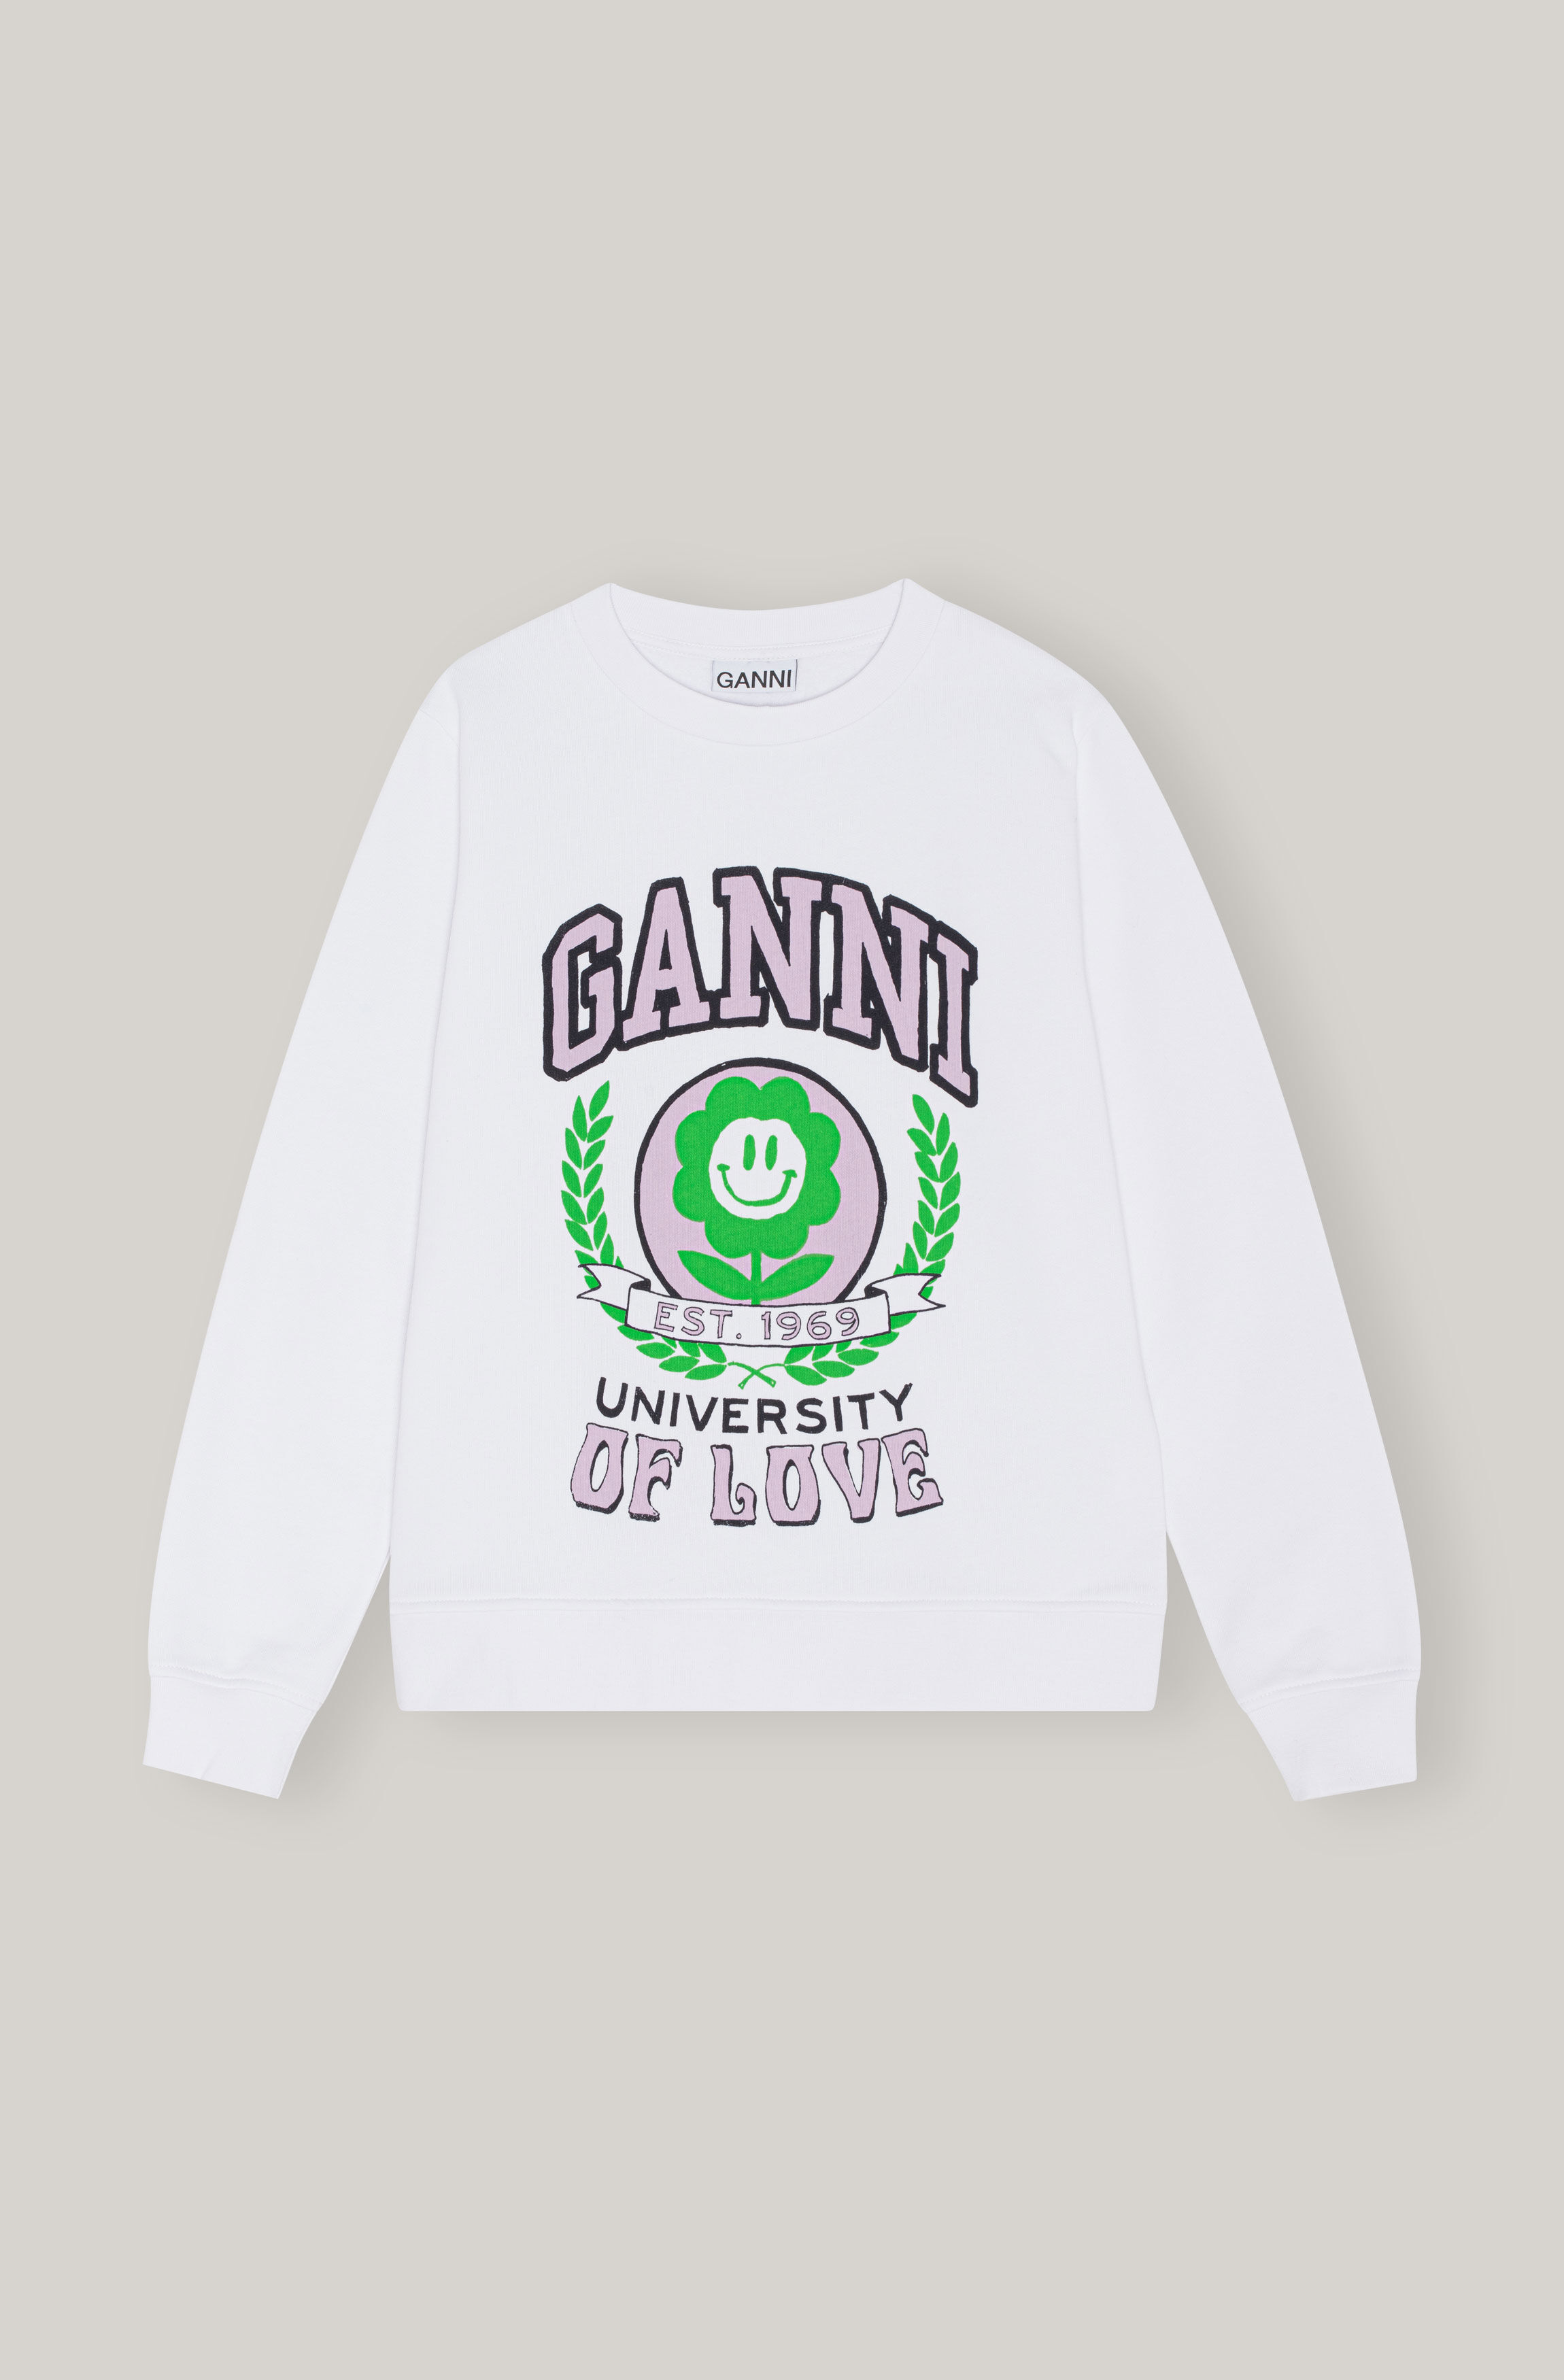 Women's Tops | Shirts, Bloes, Tees & Sweatshirts | GANNI